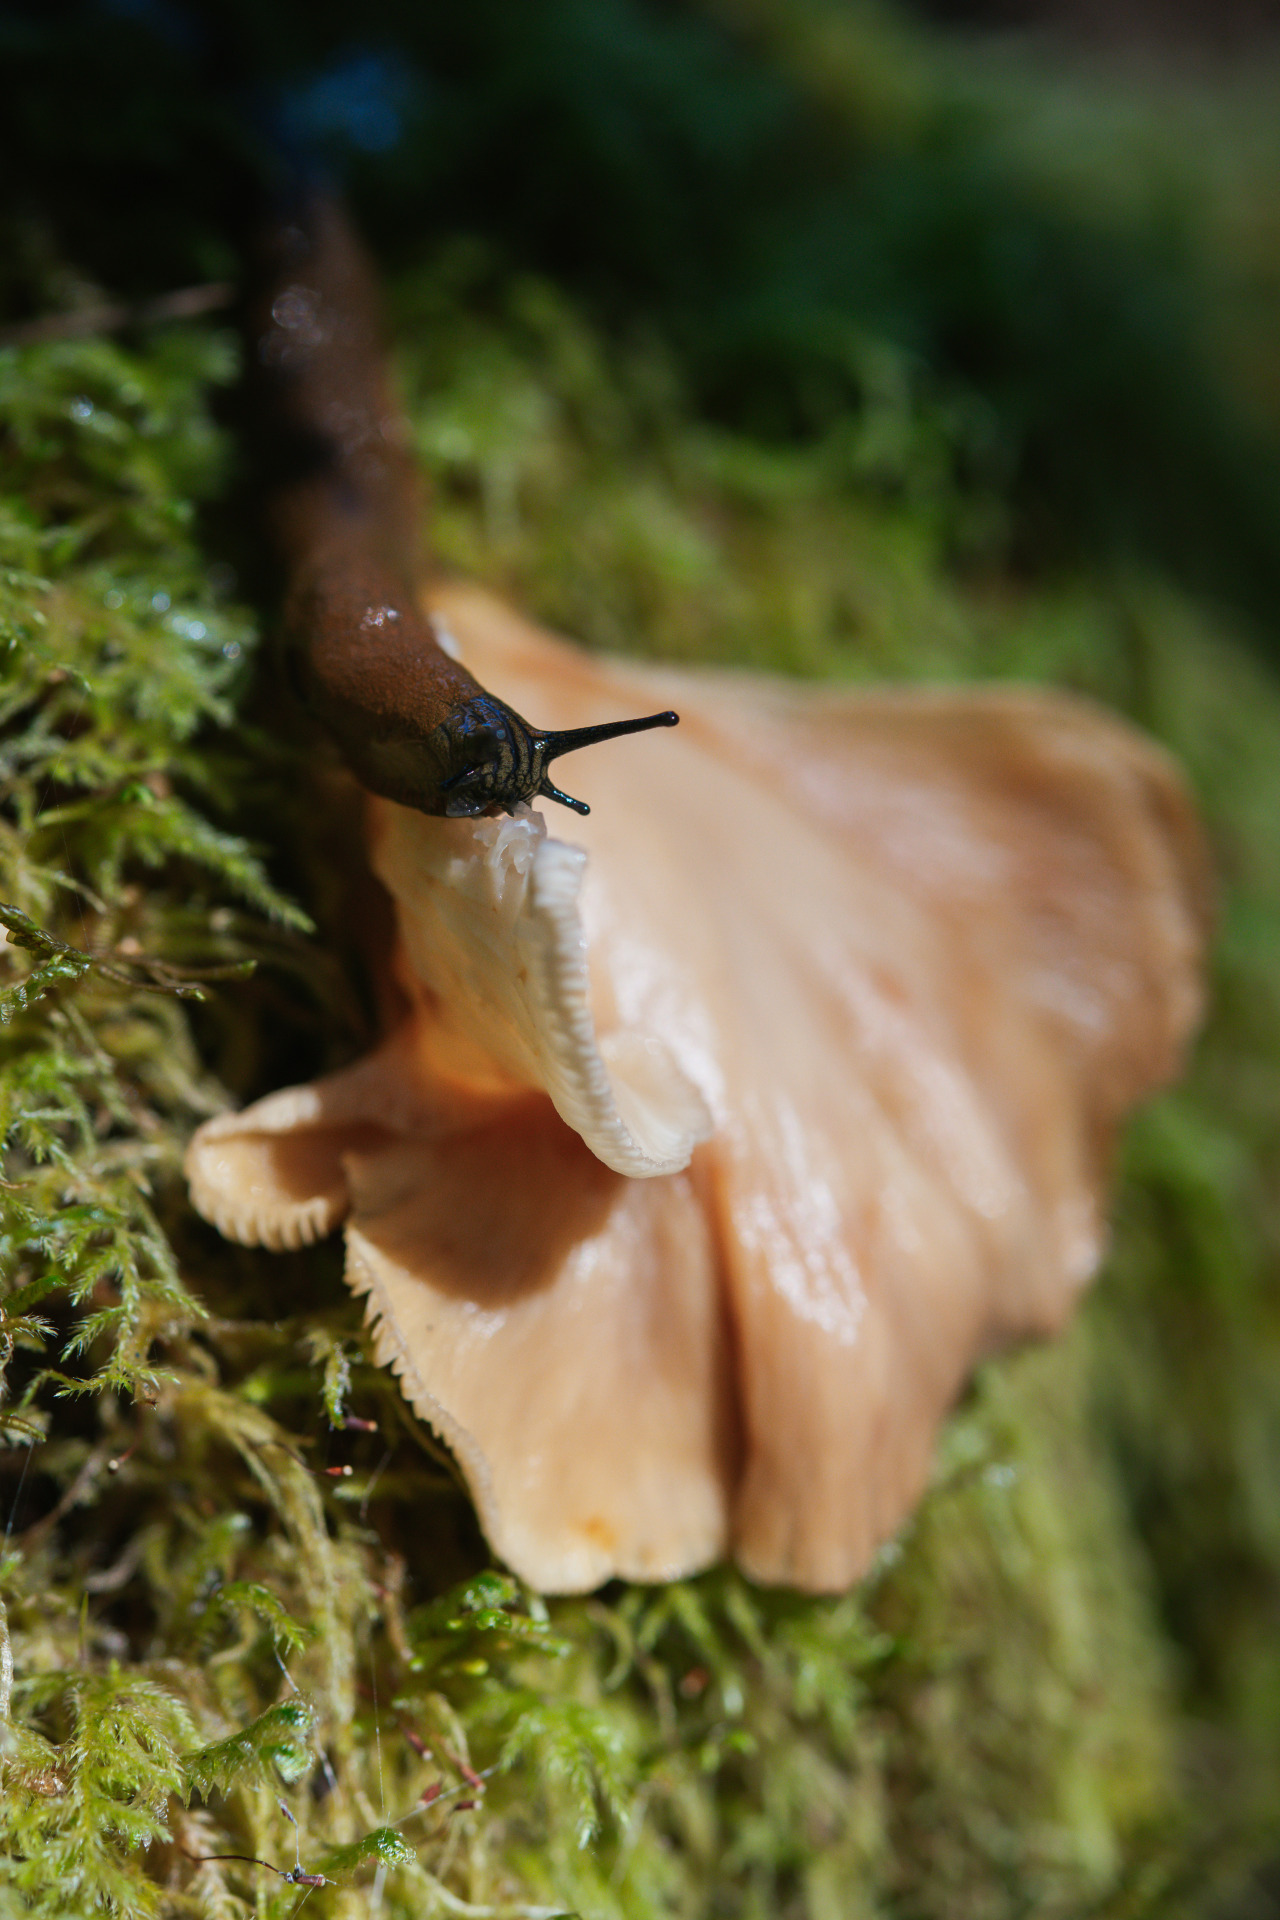 Slug having a snack #mushroom#fungi#mycology#macro#animals#nature#landscape#lensblr#original photographers#vertical nature#photography #photographers on tumblr #Washington#uncropped nature#vsco#pnw#travel#pacific northwest#wanderlust#p